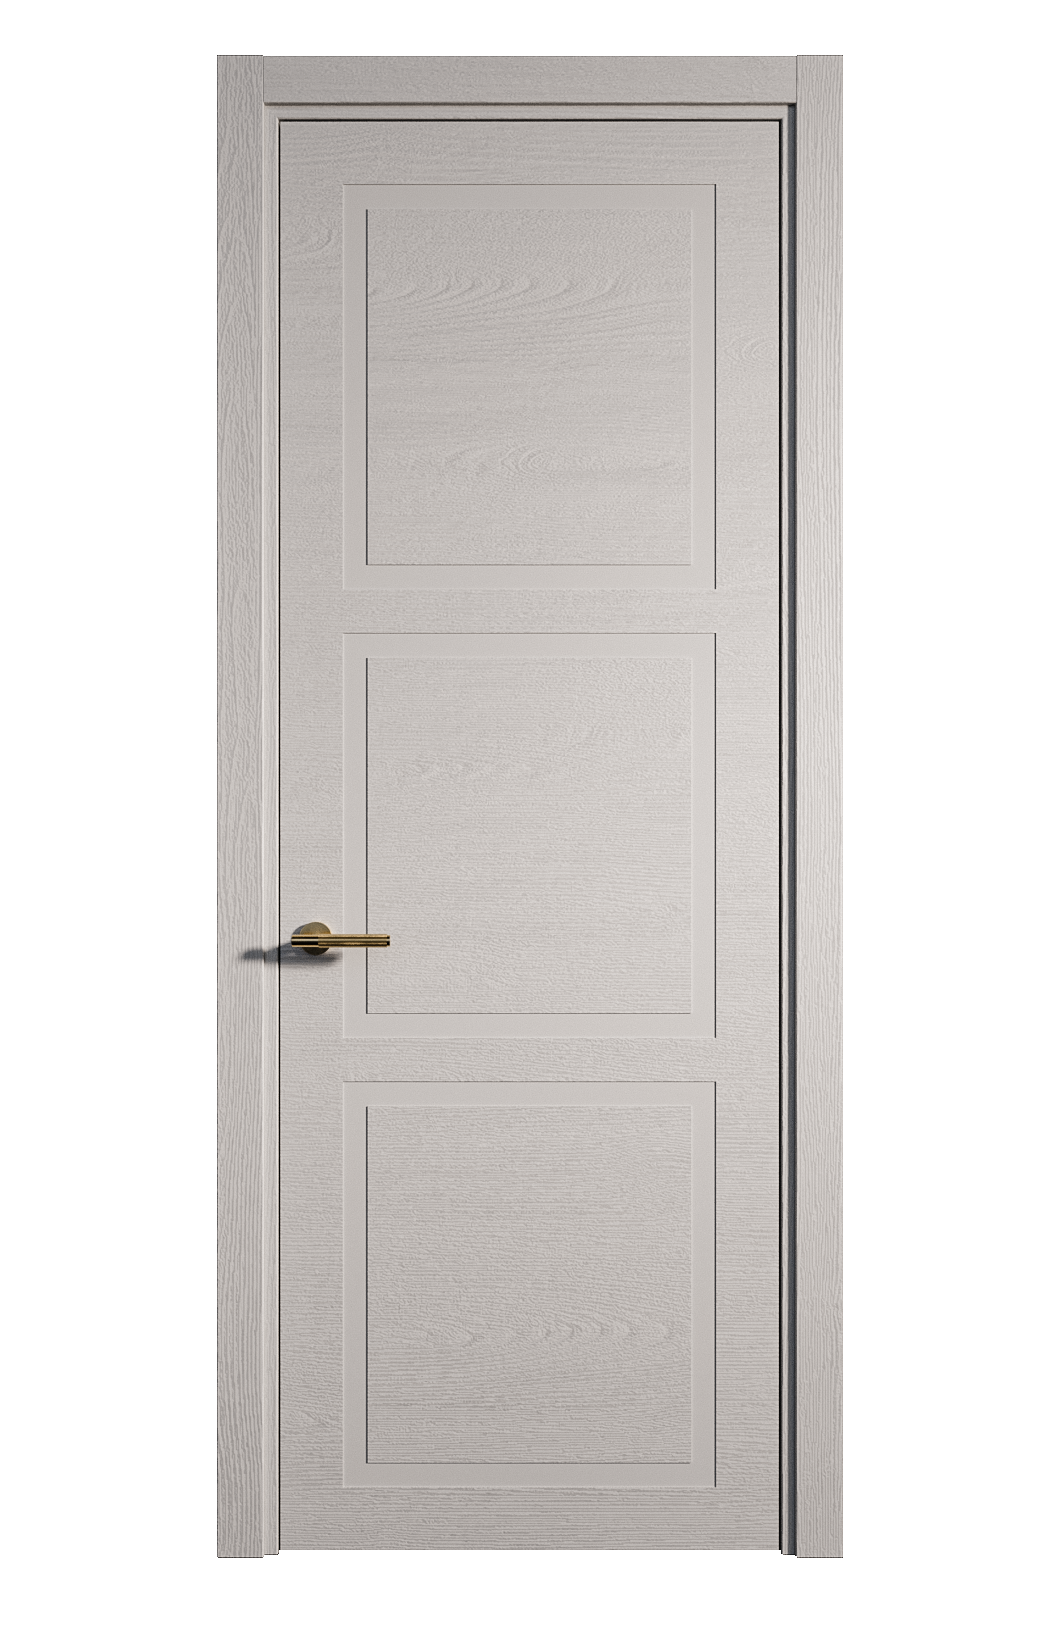 Межкомнатная дверь Бостон-3 глухая эмаль ral 7047 24474